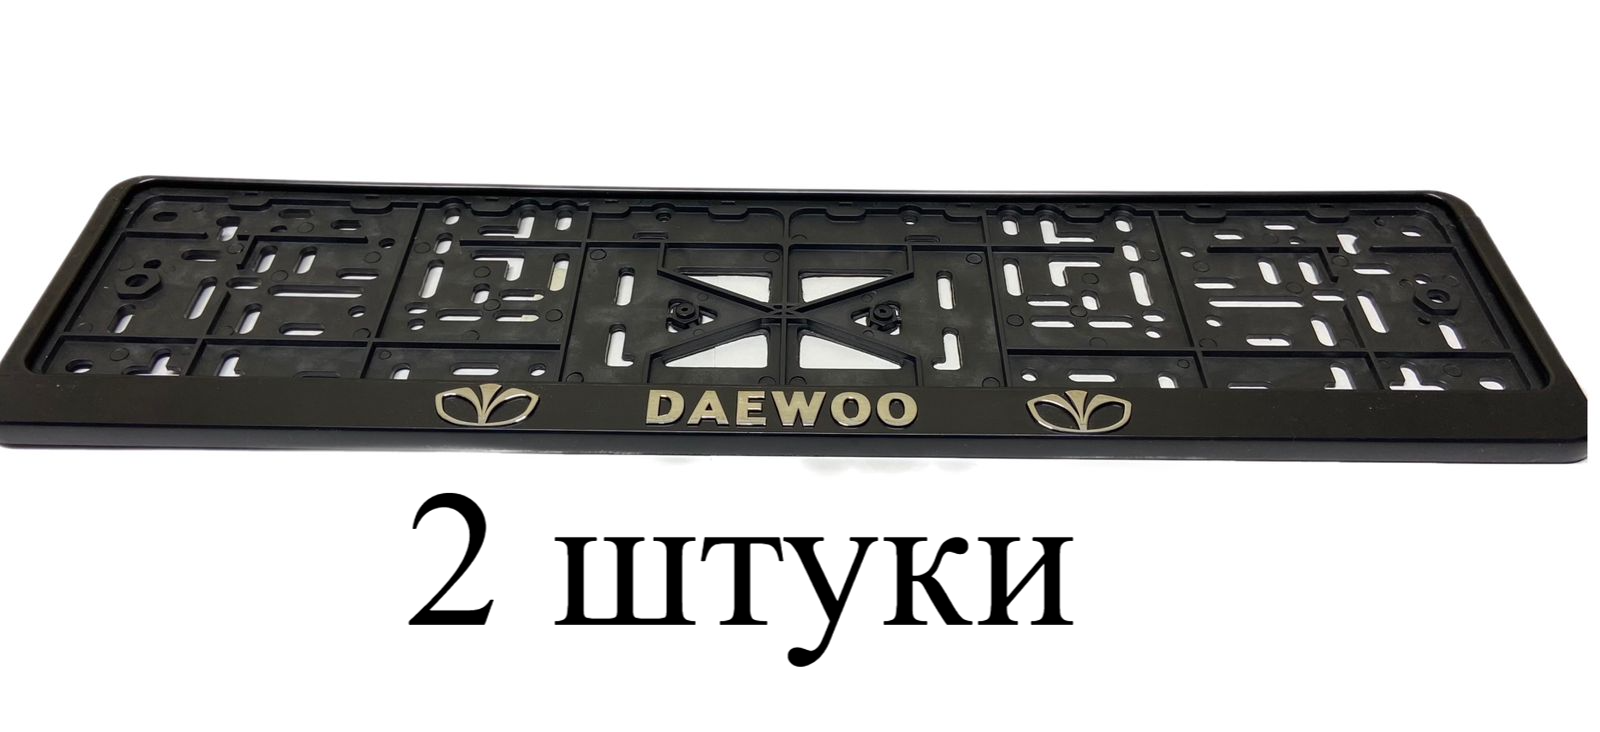 Рамка для номера автомобиля с надписью "DAEWOO" пластиковая, комплект - 2 шт.